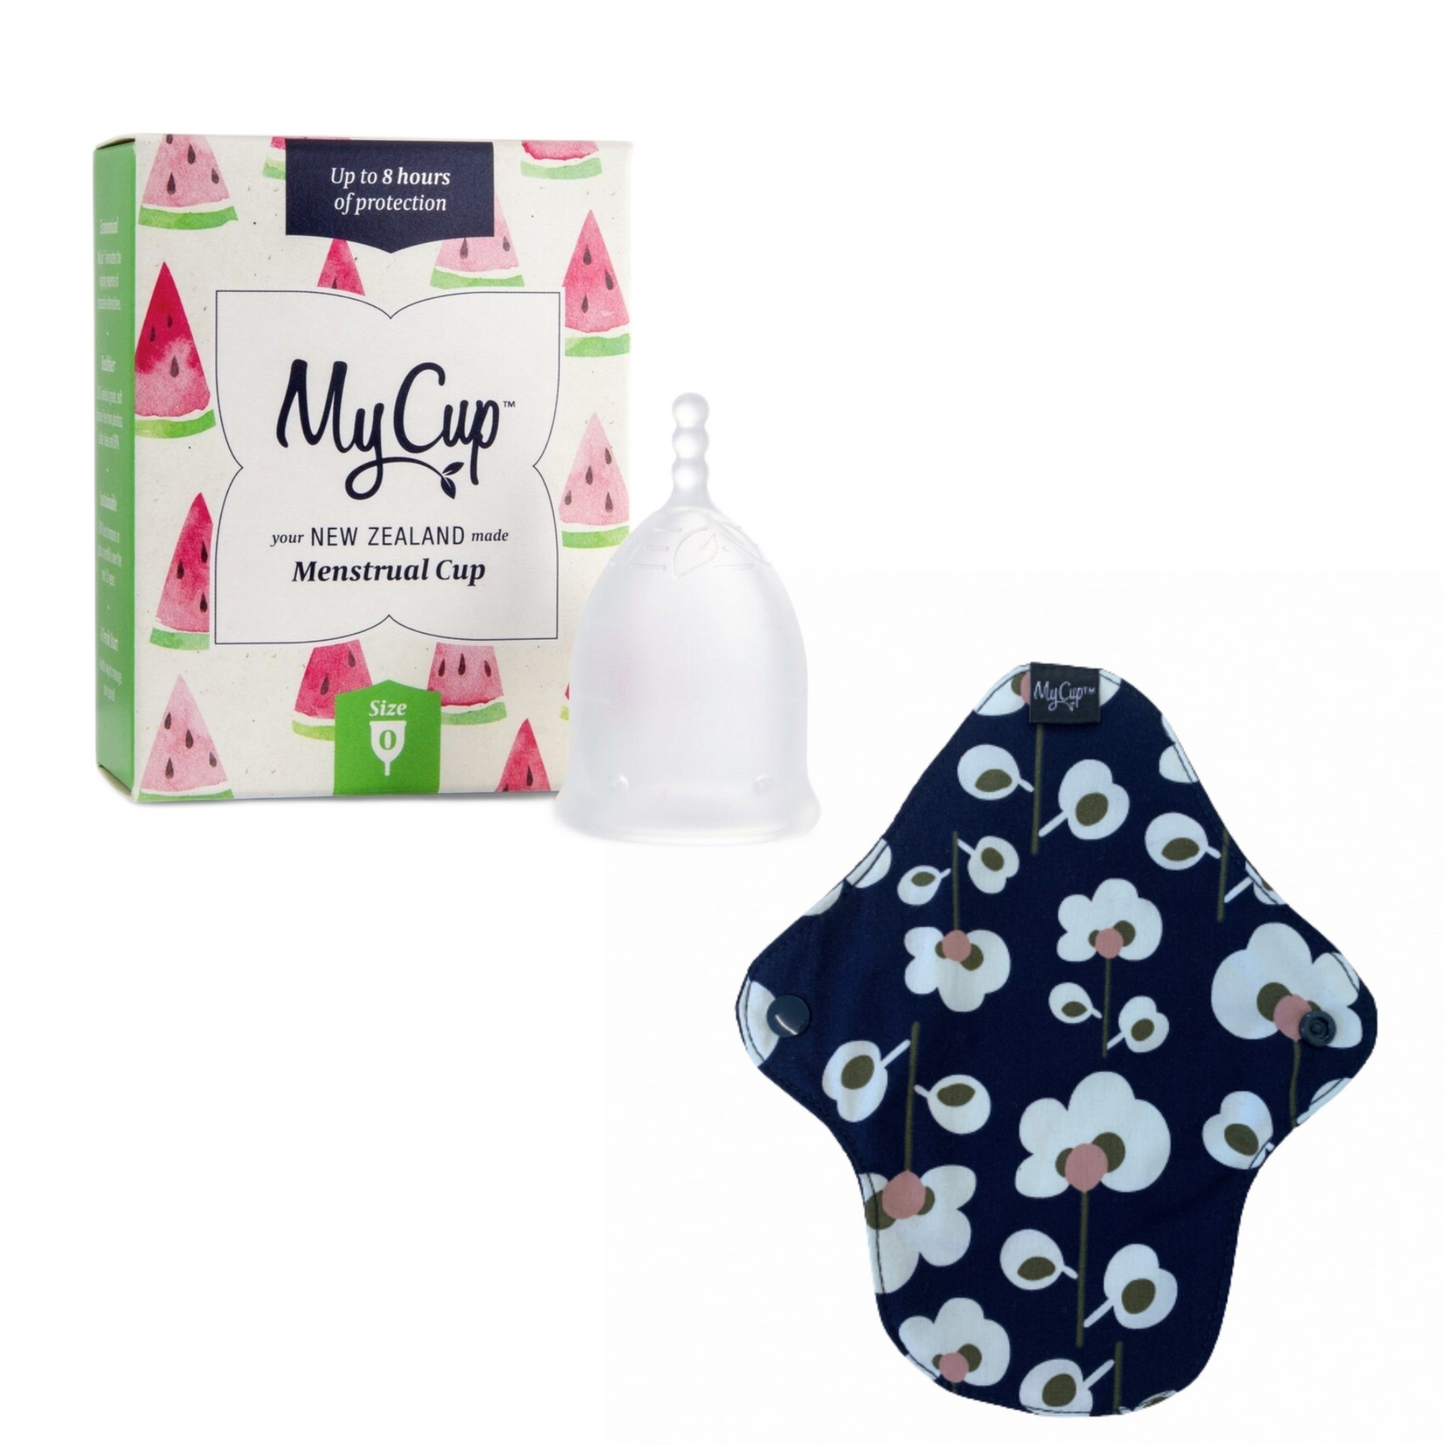 MyCup™ Menstrual Cup Size 0 + Reusable Super Pad Bundle